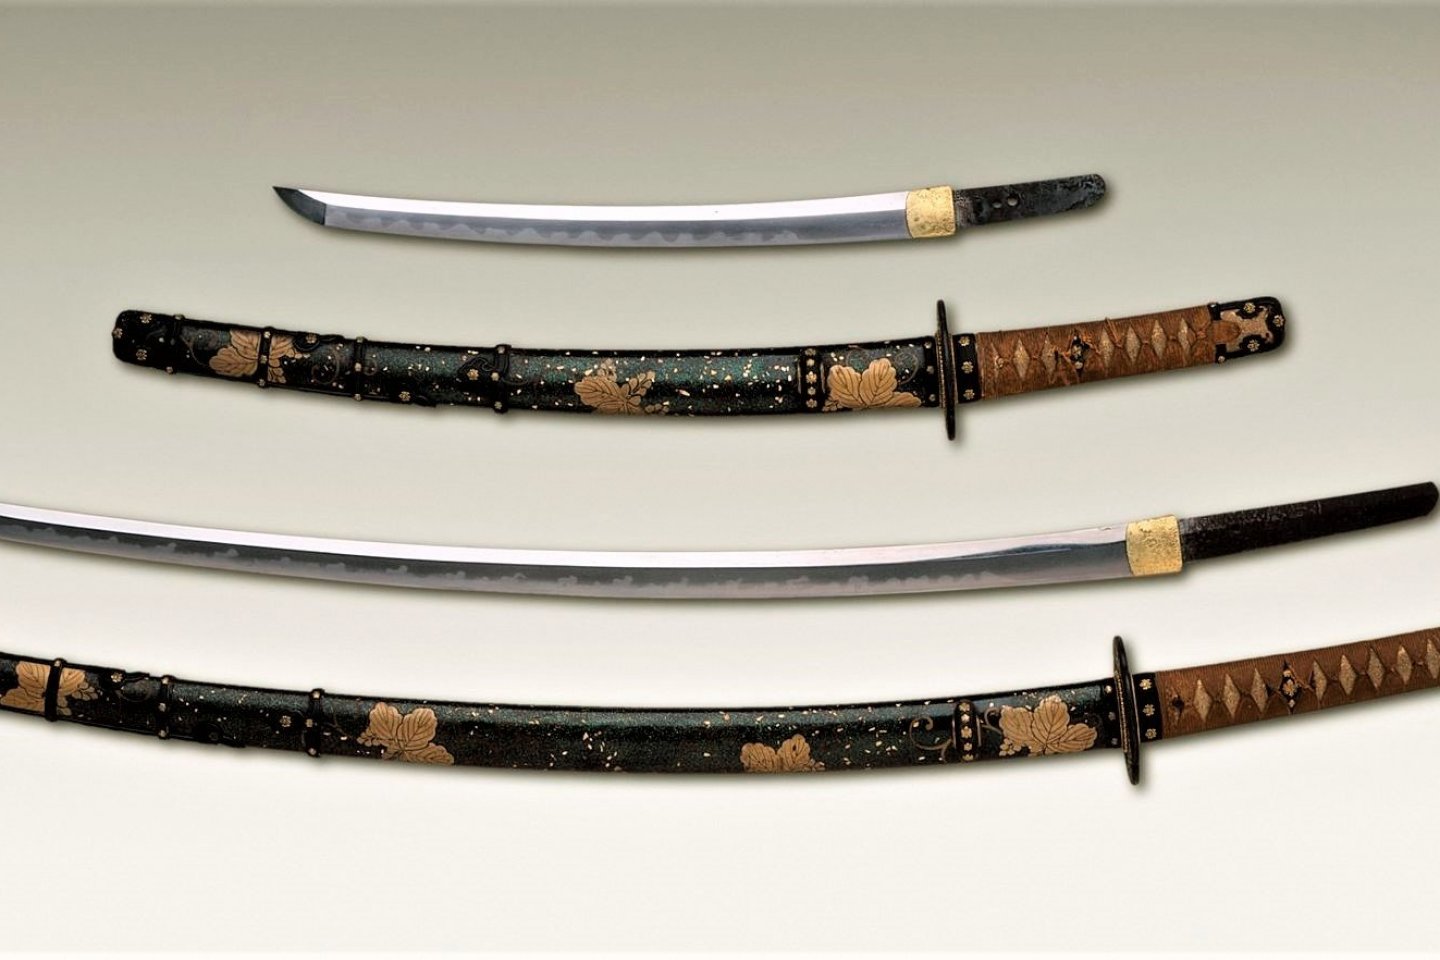 Japanese Swords of the Gokaden 2018 - Events in Tokyo - Japan Travel